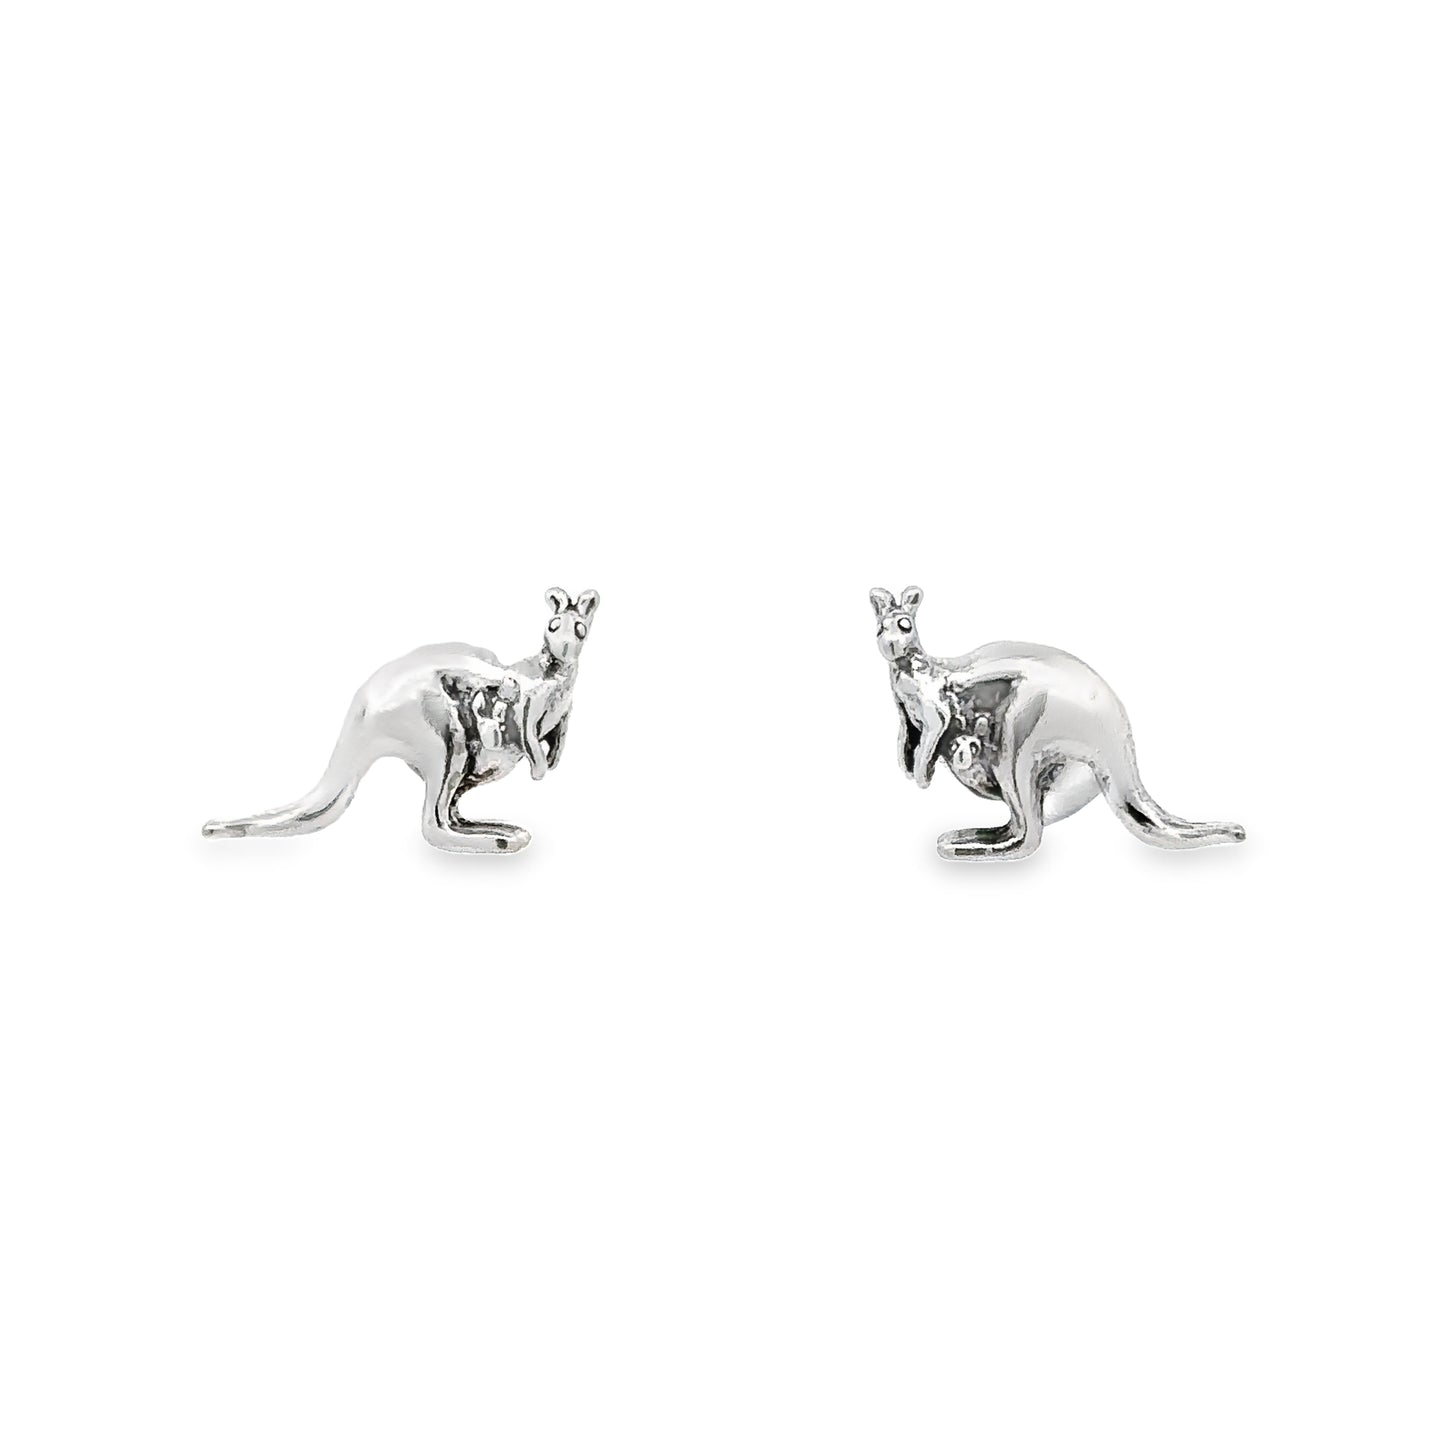 A pair of sterling silver Kangaroo with Joey stud earrings.